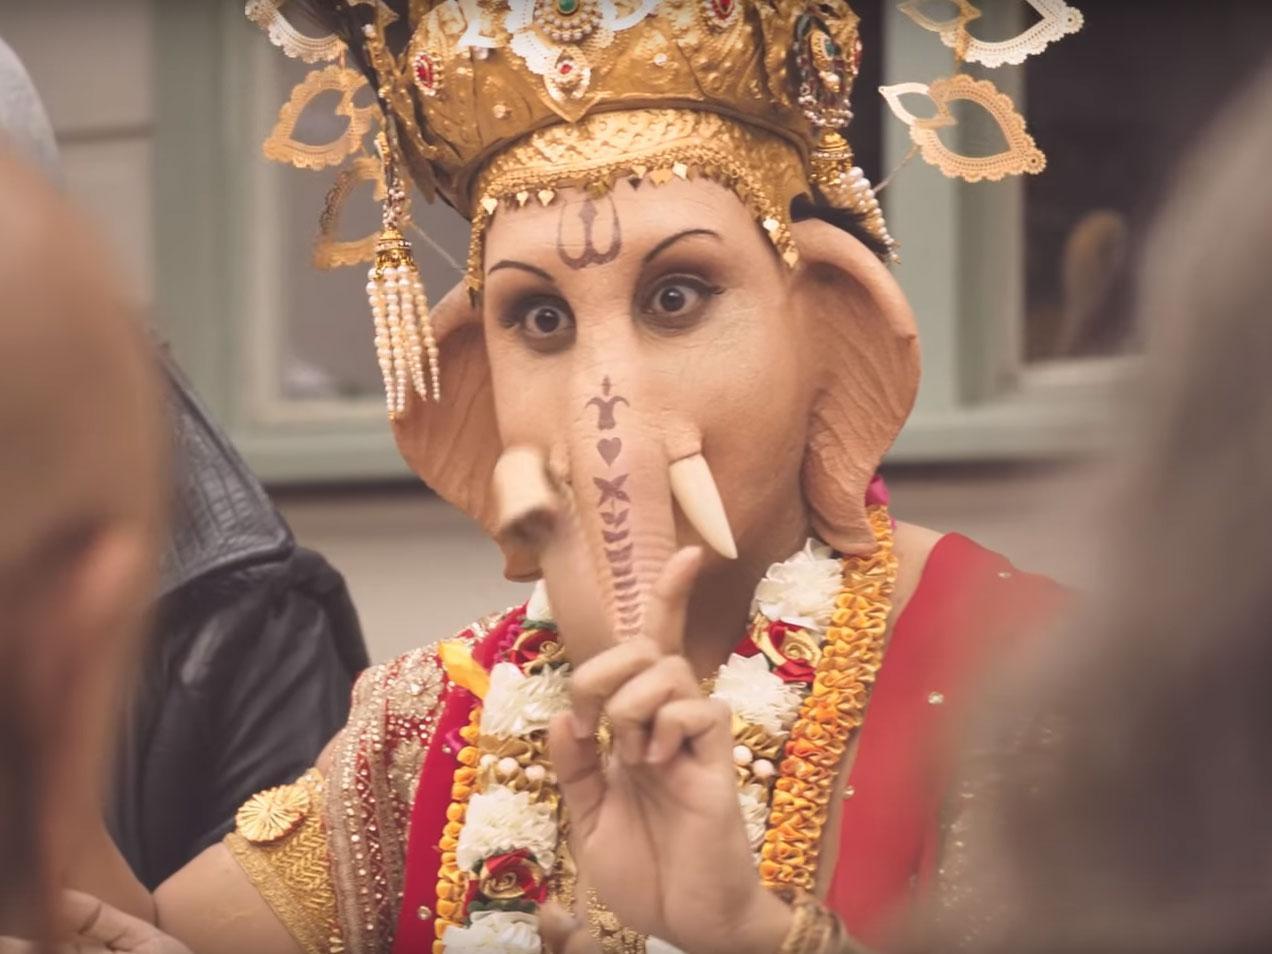 Hindu deity Ganesh is seen eating lamb in the ad